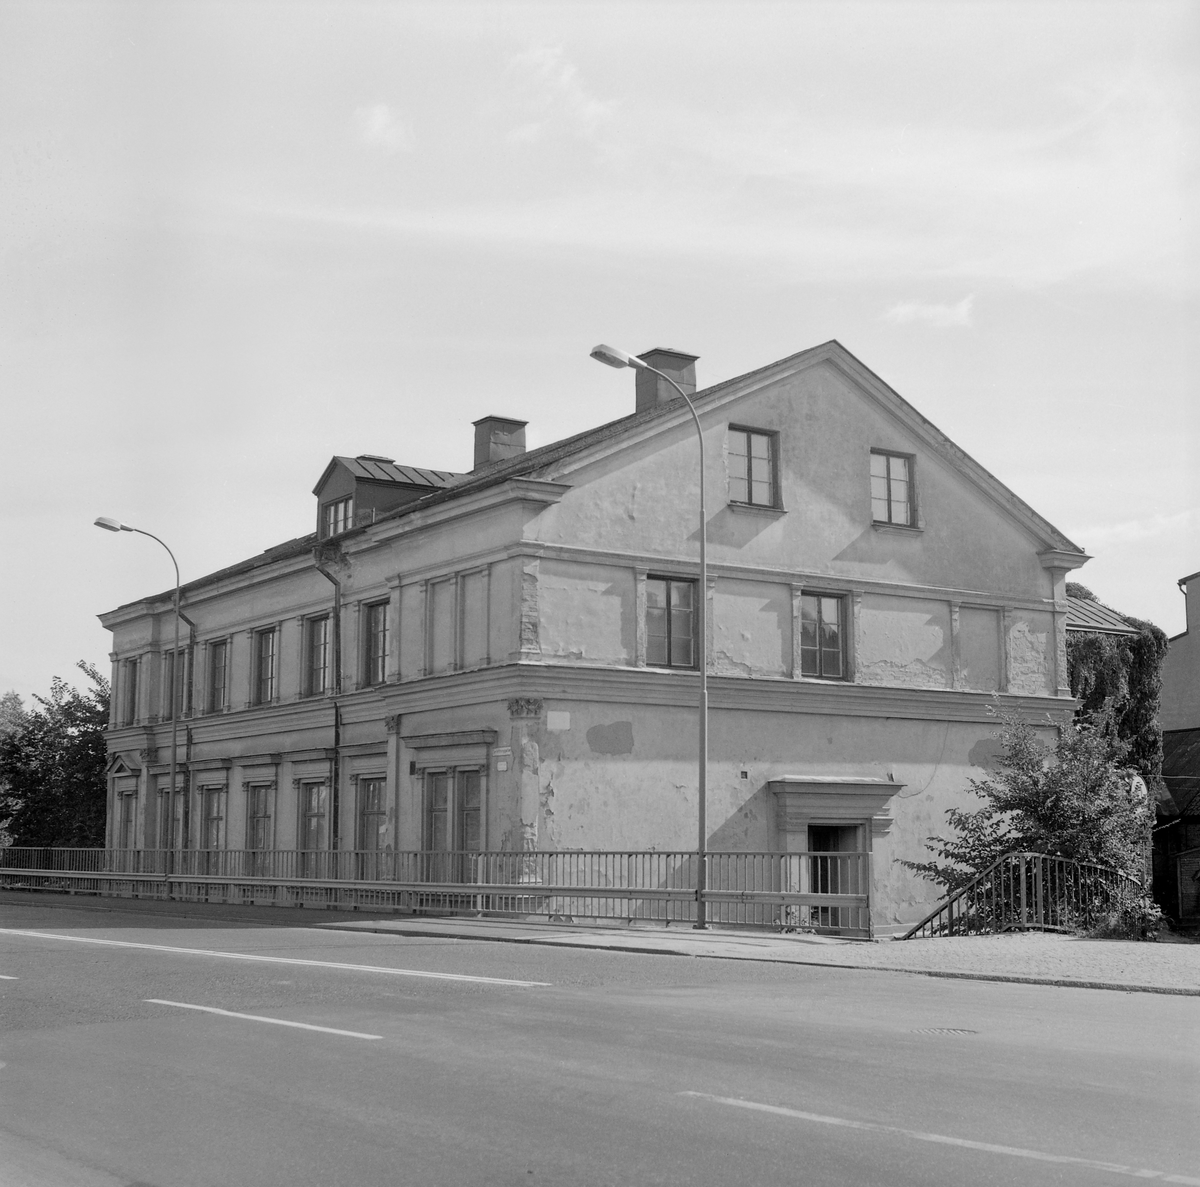 Drottninggatan 2 är ett representativt exempel på de putsade hus i nystilar som uppfördes längs gatan när den anlades under det sena 1800-talet. Bryggare Jacob Wilhelm Svensson lät uppföra huset omkring 1875. Efter att Drottningbron anlagts i slutet av 1940-talet fick byggnadskroppen som synes ett inklämt läge. Här dokumenterad av Östergötlands museum inför rivning. Vy mot sydost.